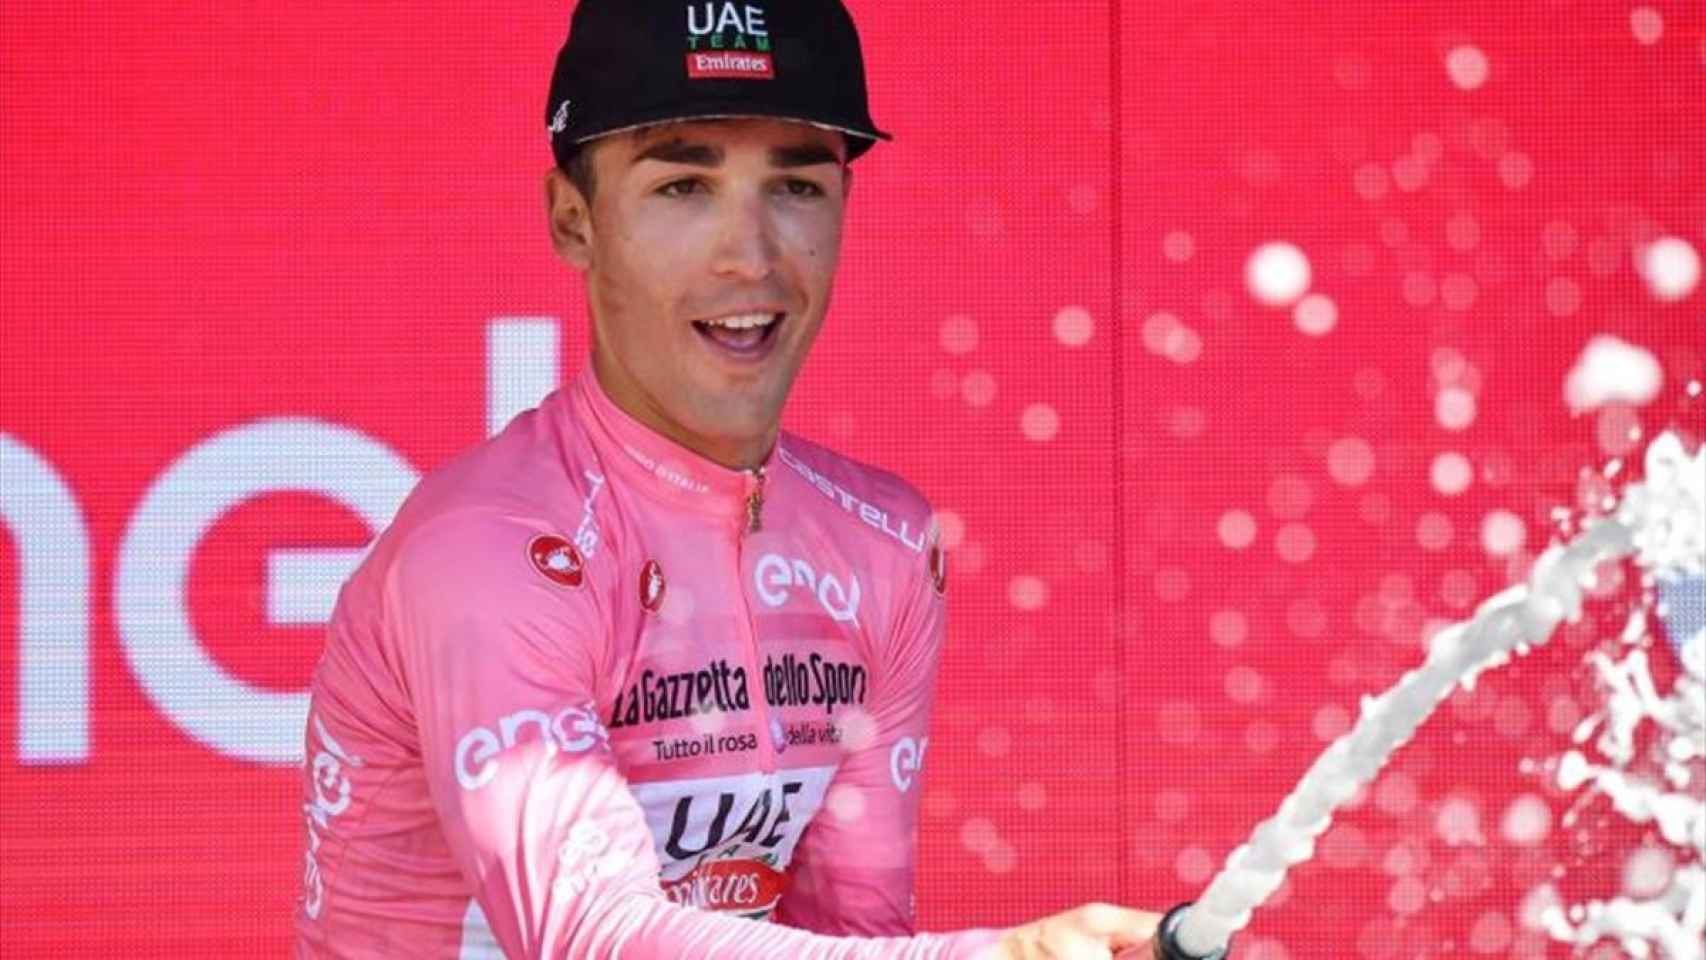 Valerio Conti, en el Giro de Italia